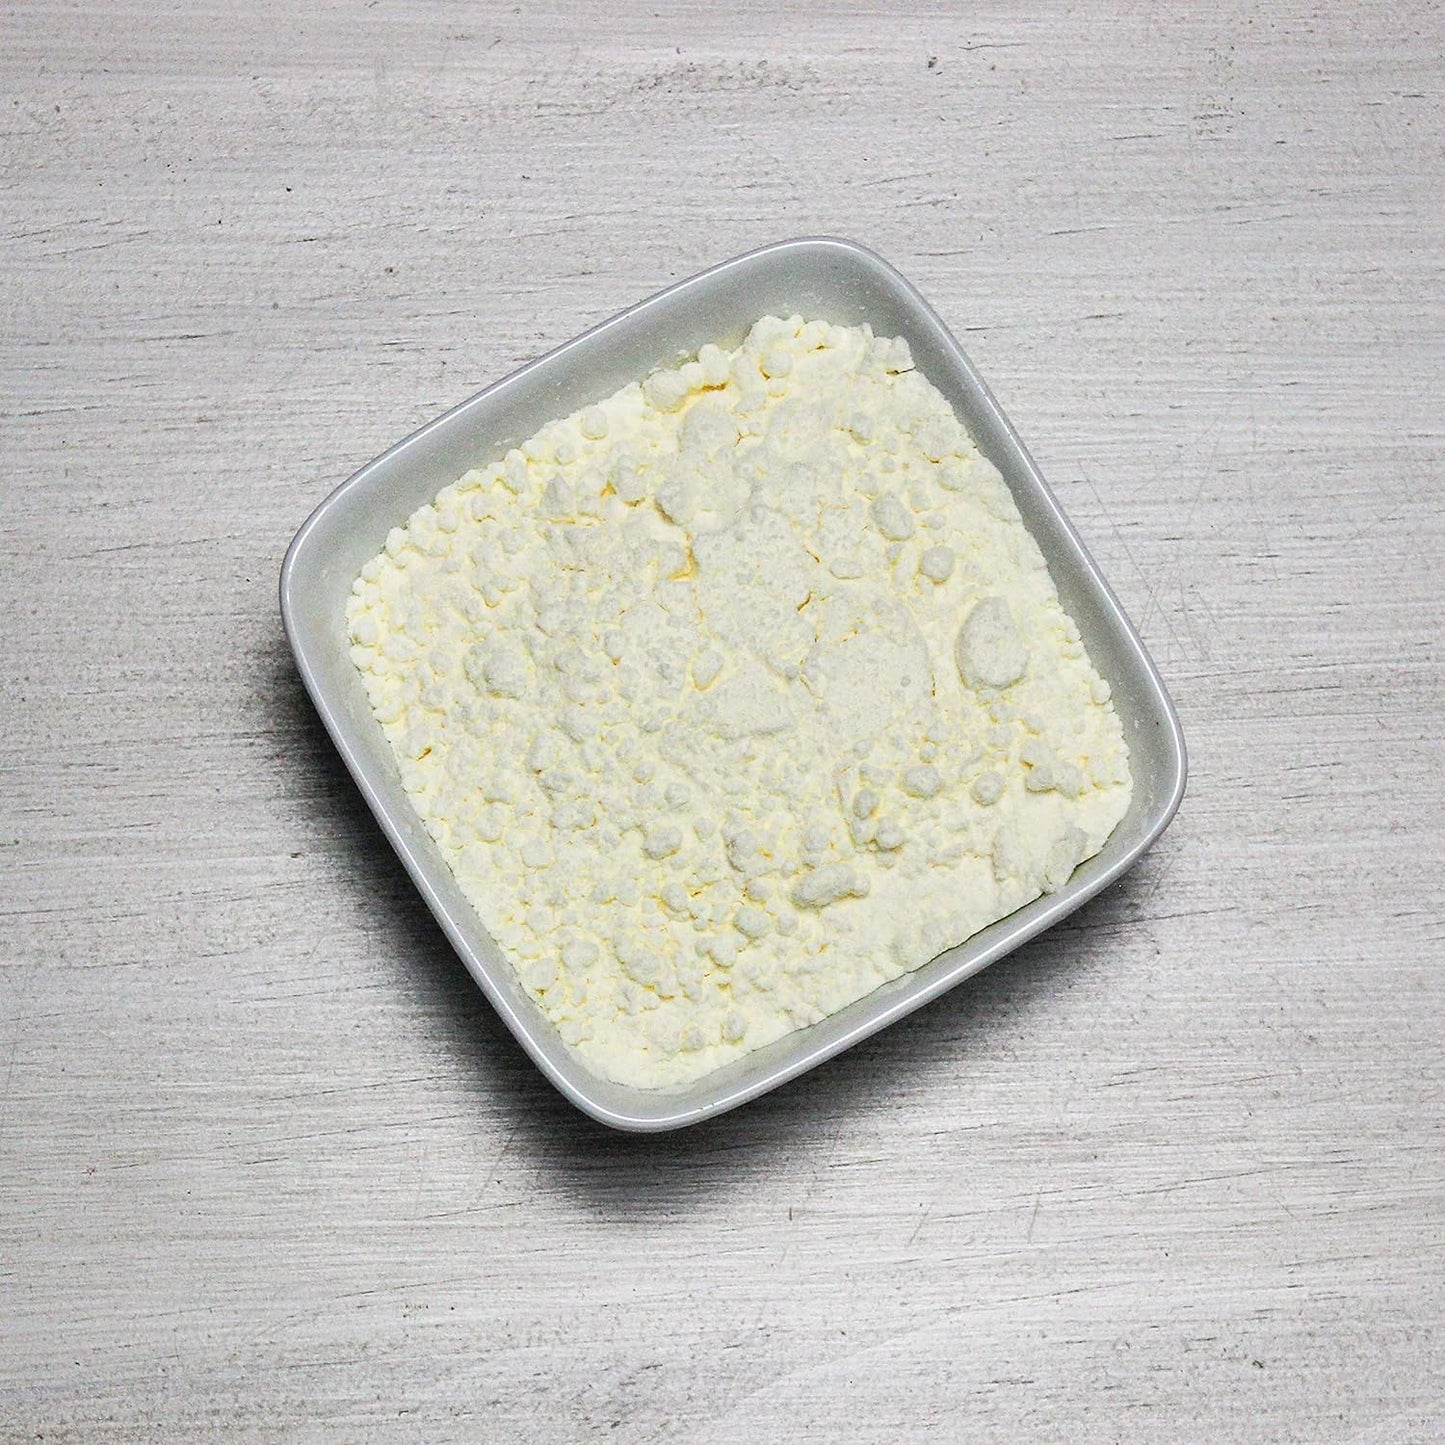 Augason Farms Butter Powder 2 lbs 4 oz #10 Cans, 10 Yr Shelf Life Emergency Food